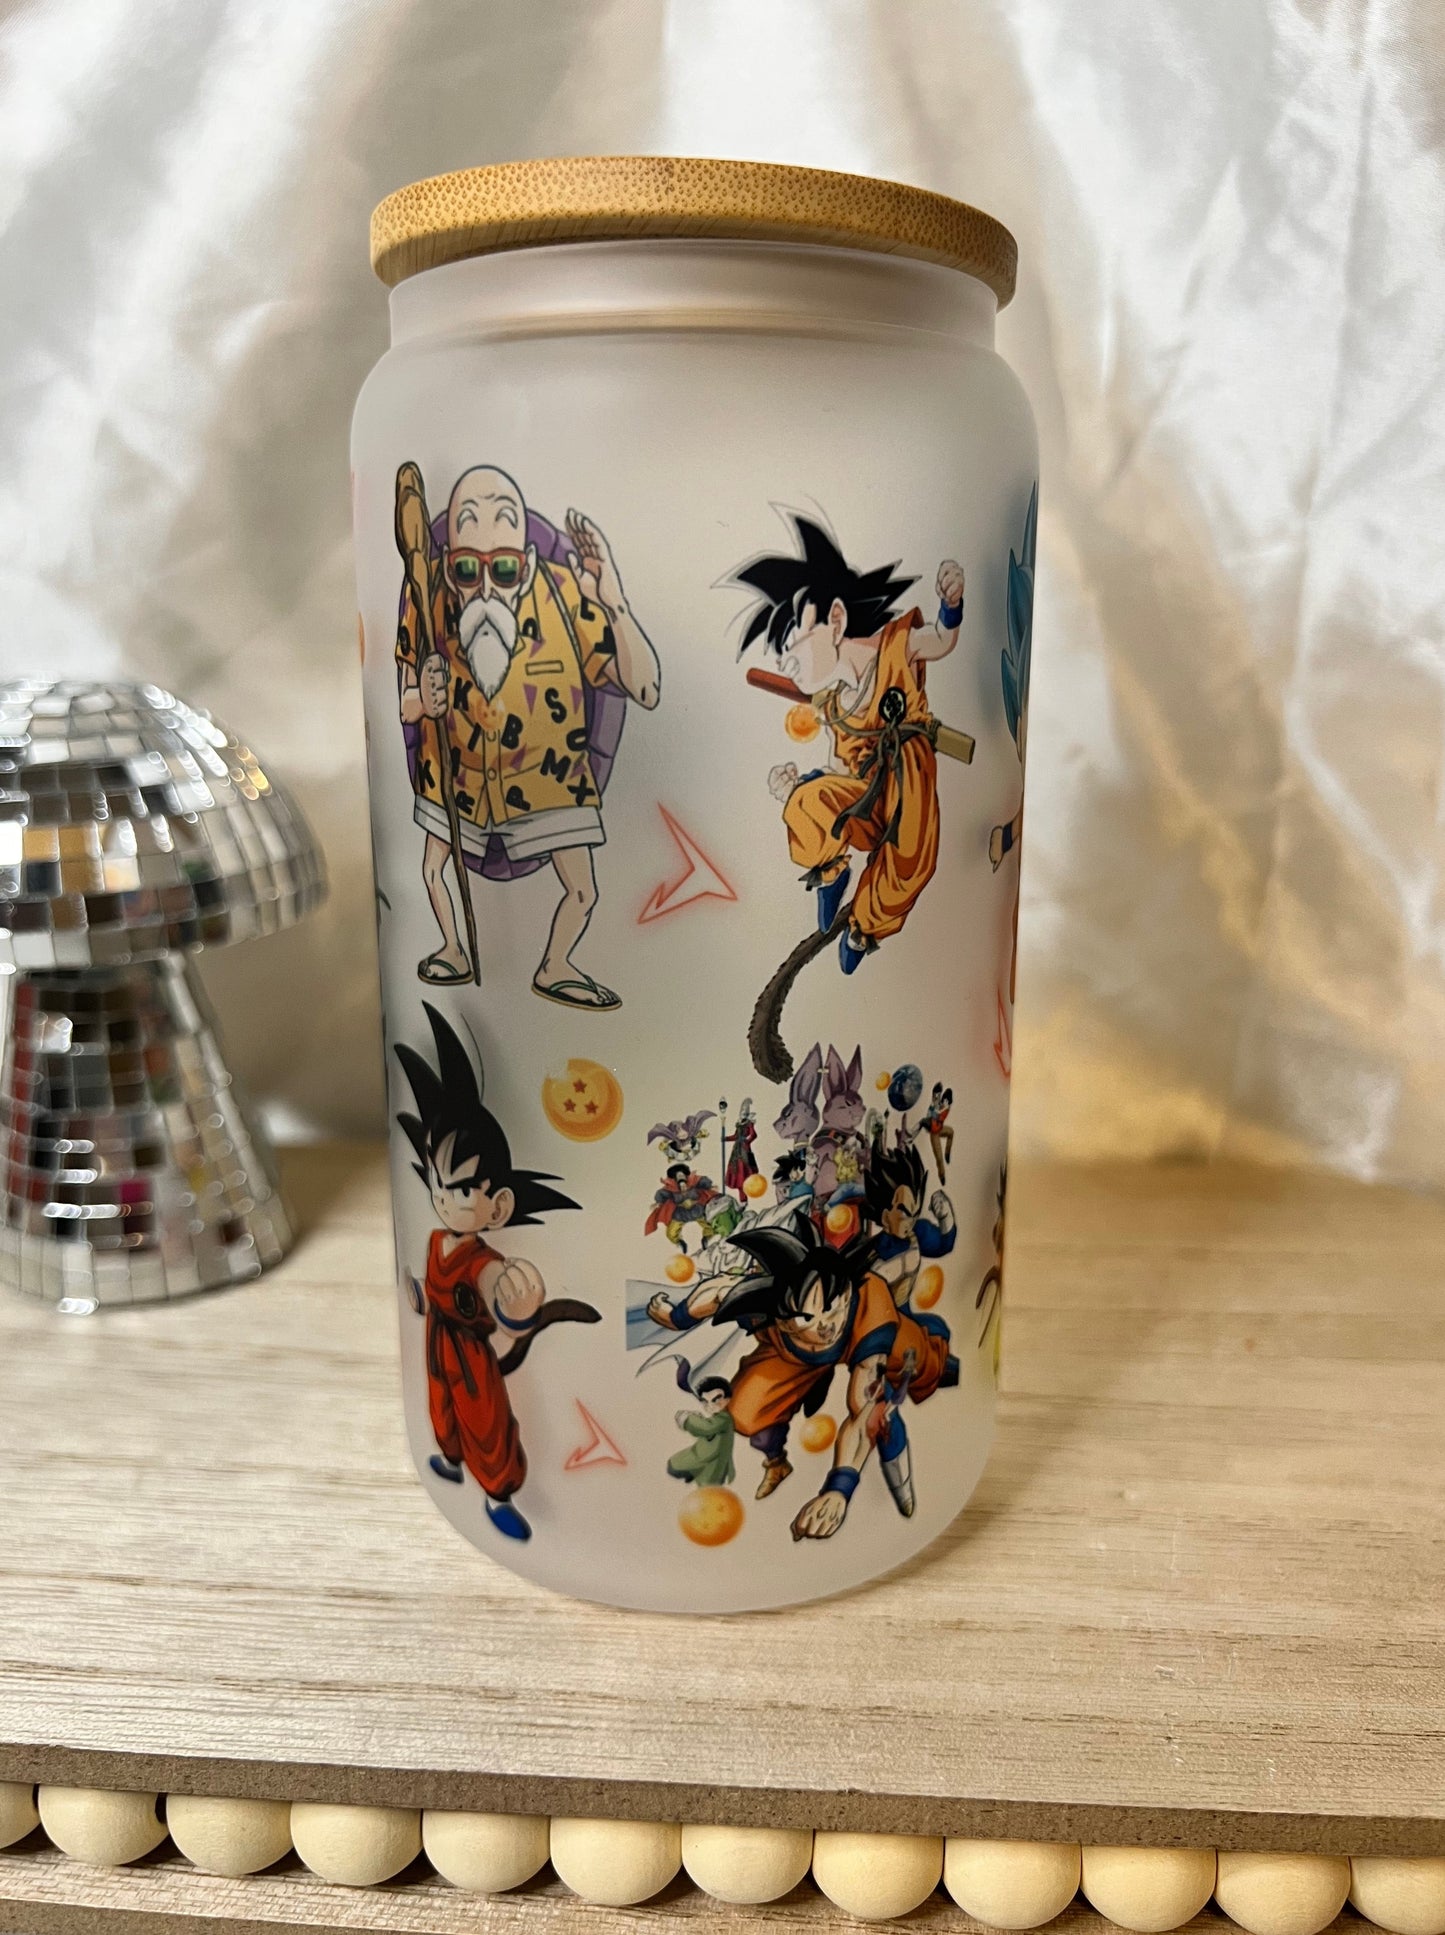 Anime Z 16oz Glass Cup